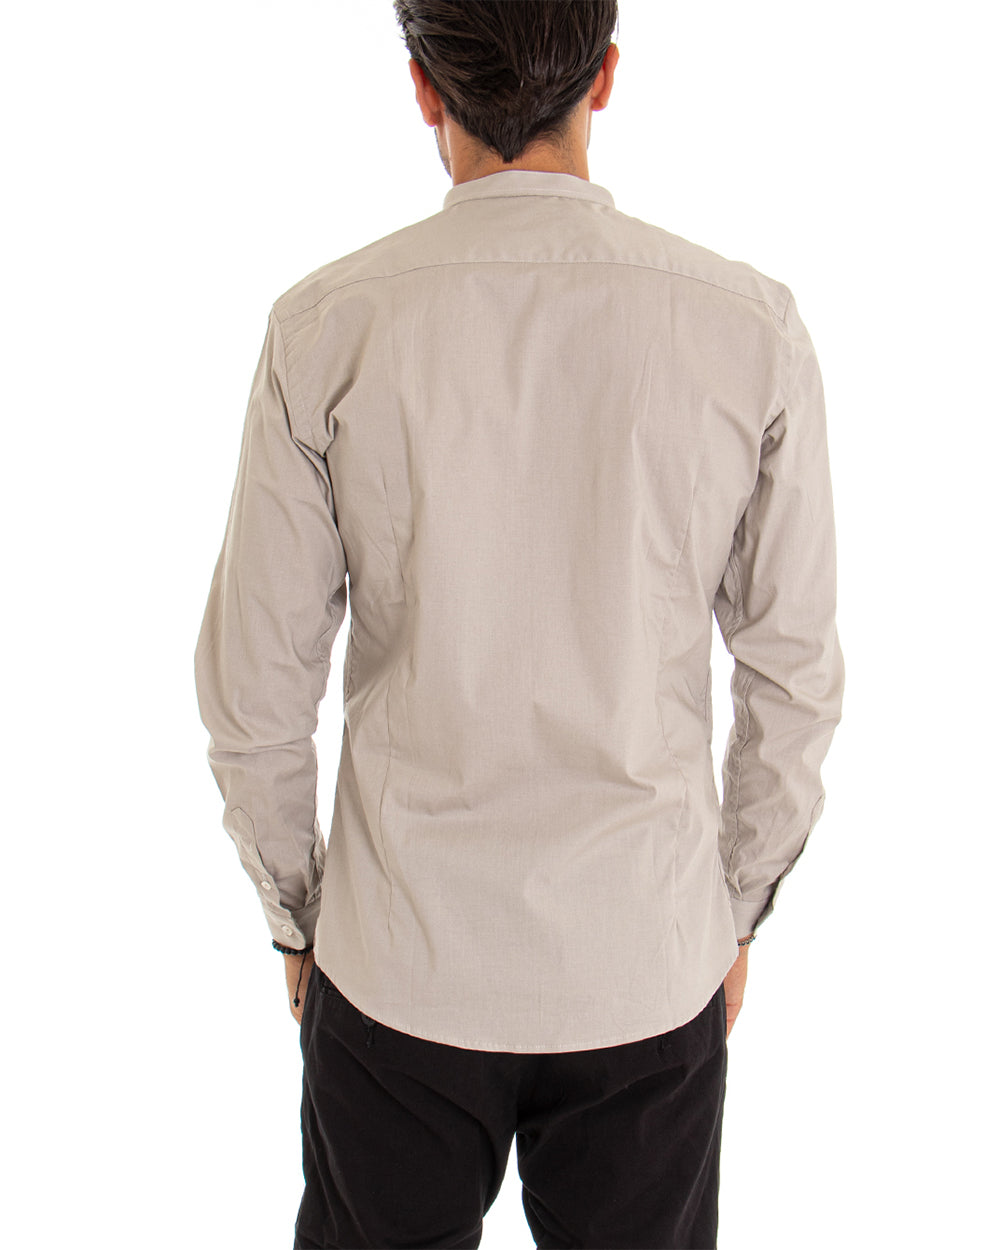 Camicia Uomo Collo Coreano Manica Lunga Tinta Unita Slim Fit Basic Beige GIOSAL-C2095A